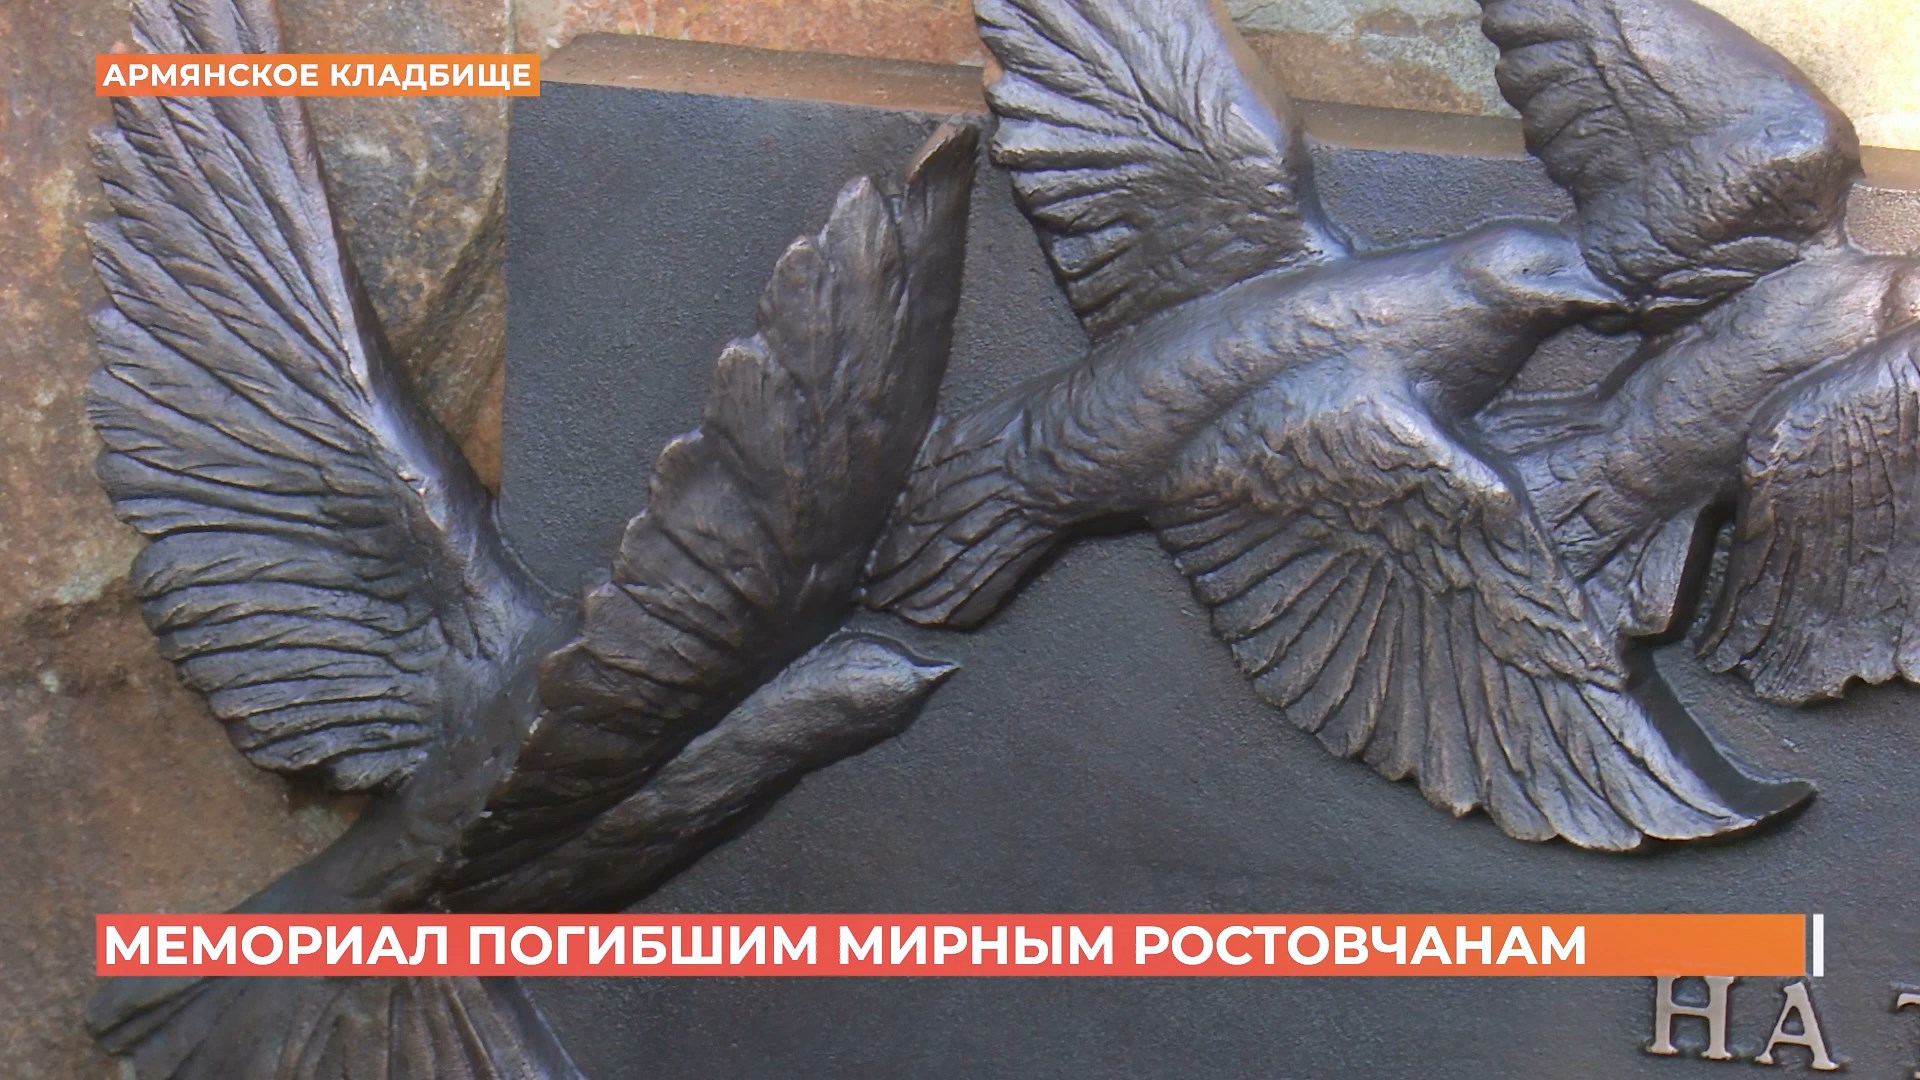 Доску памяти погибших в годы Великой Отечественной мирных жителей Ростова открыли  в Нахичевани